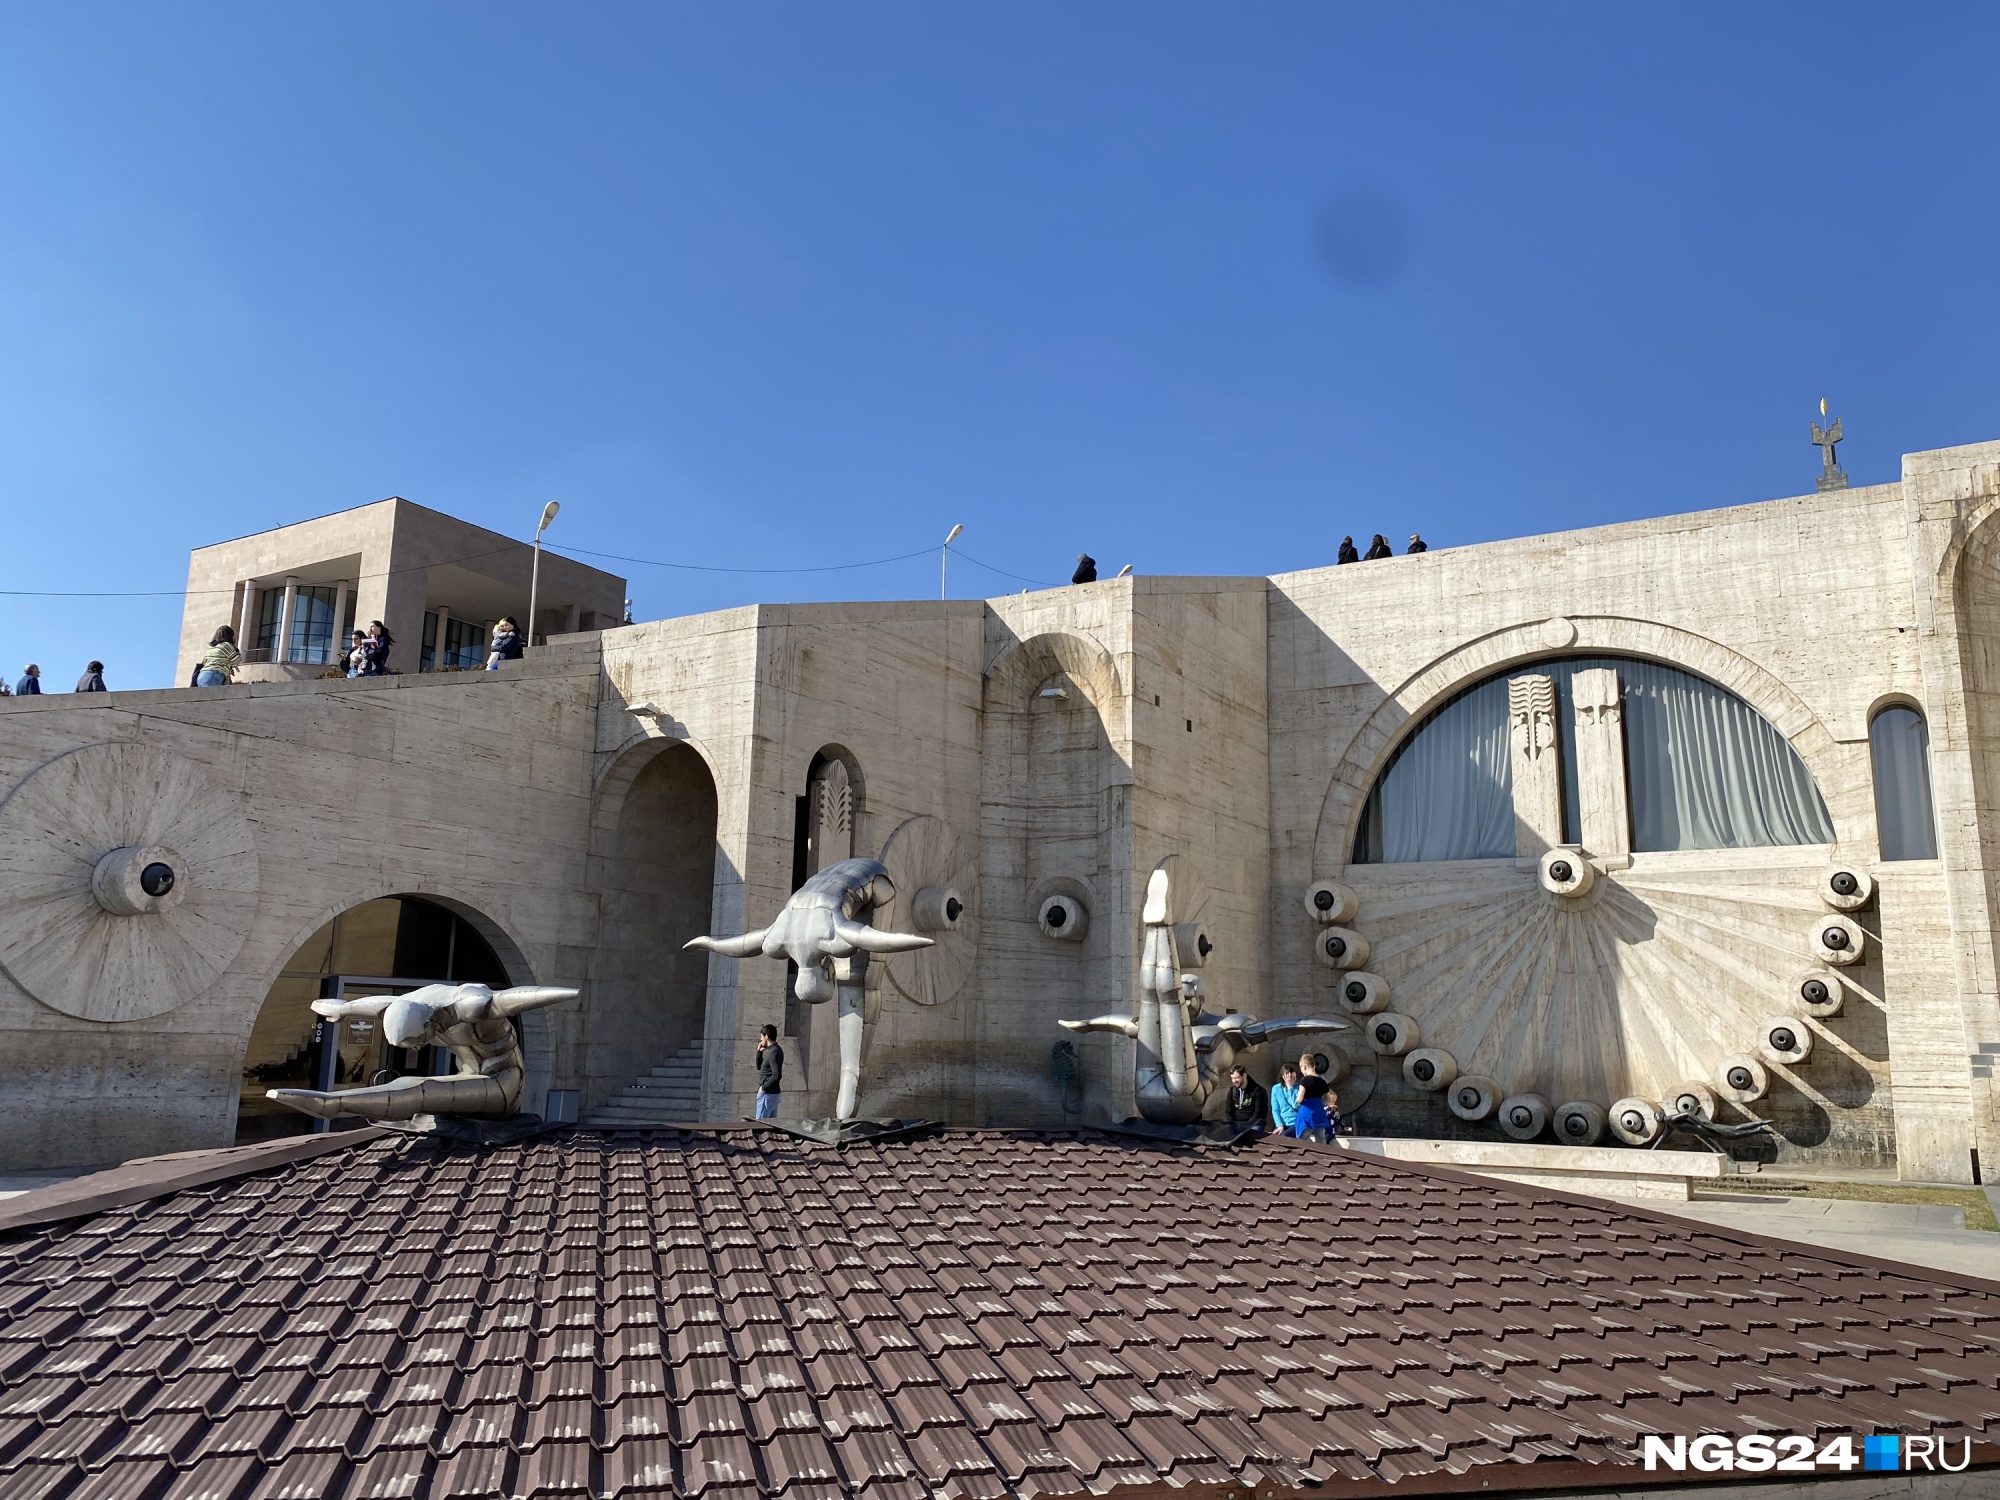 Знаменитый каскад в центре Еревана — монументальное архитектурное сооружение